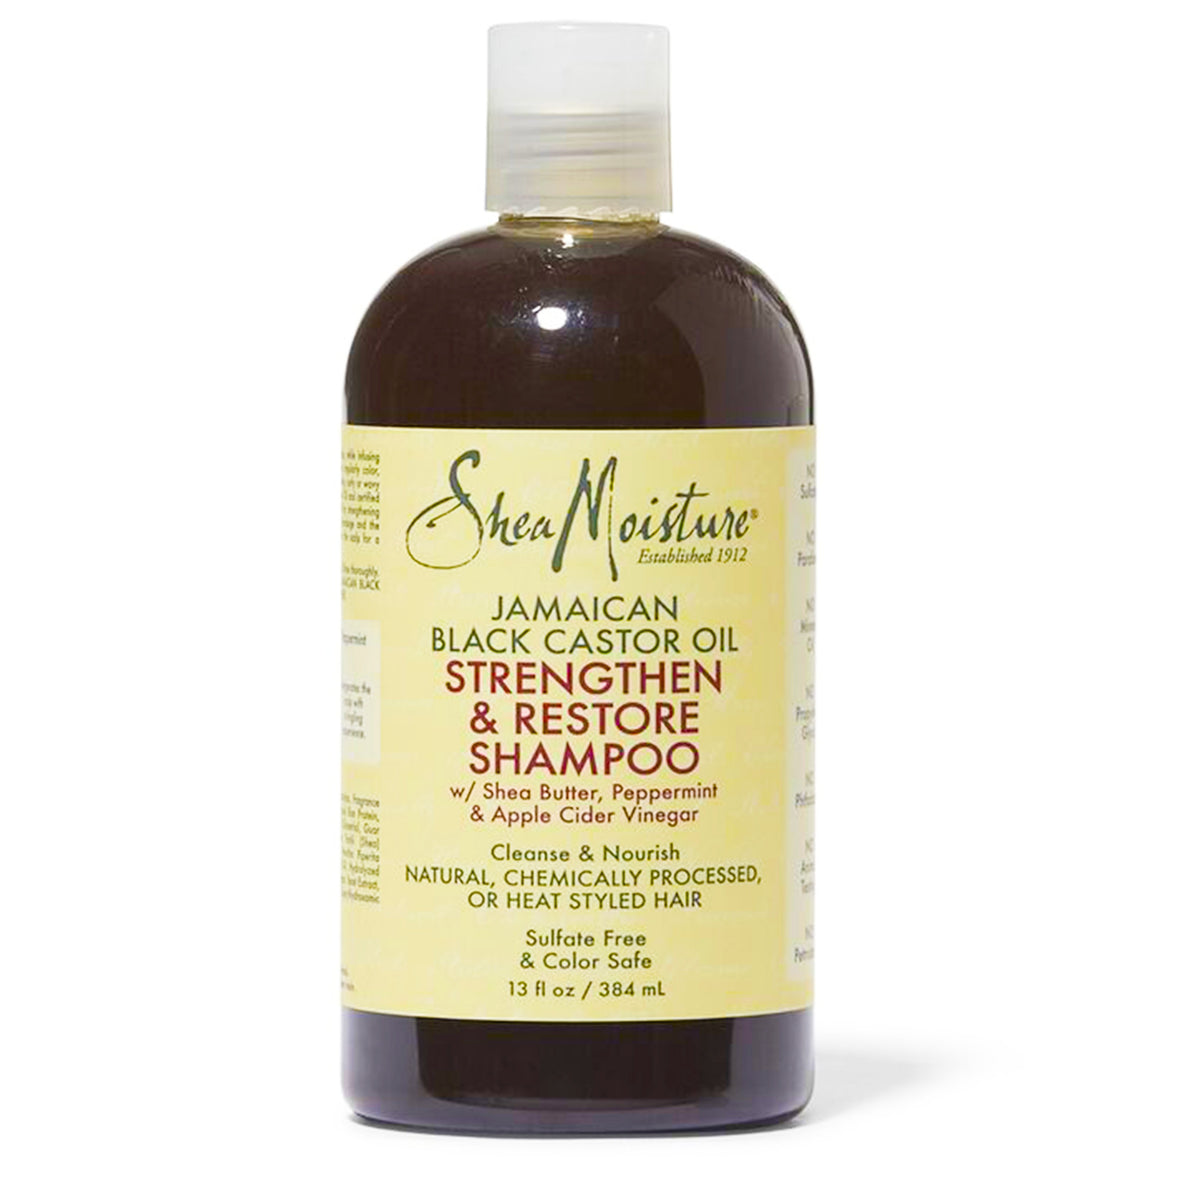 Shea Moisture Jamaican Black Castor Oil Strengthen & Restore Shampoo- AQ Online